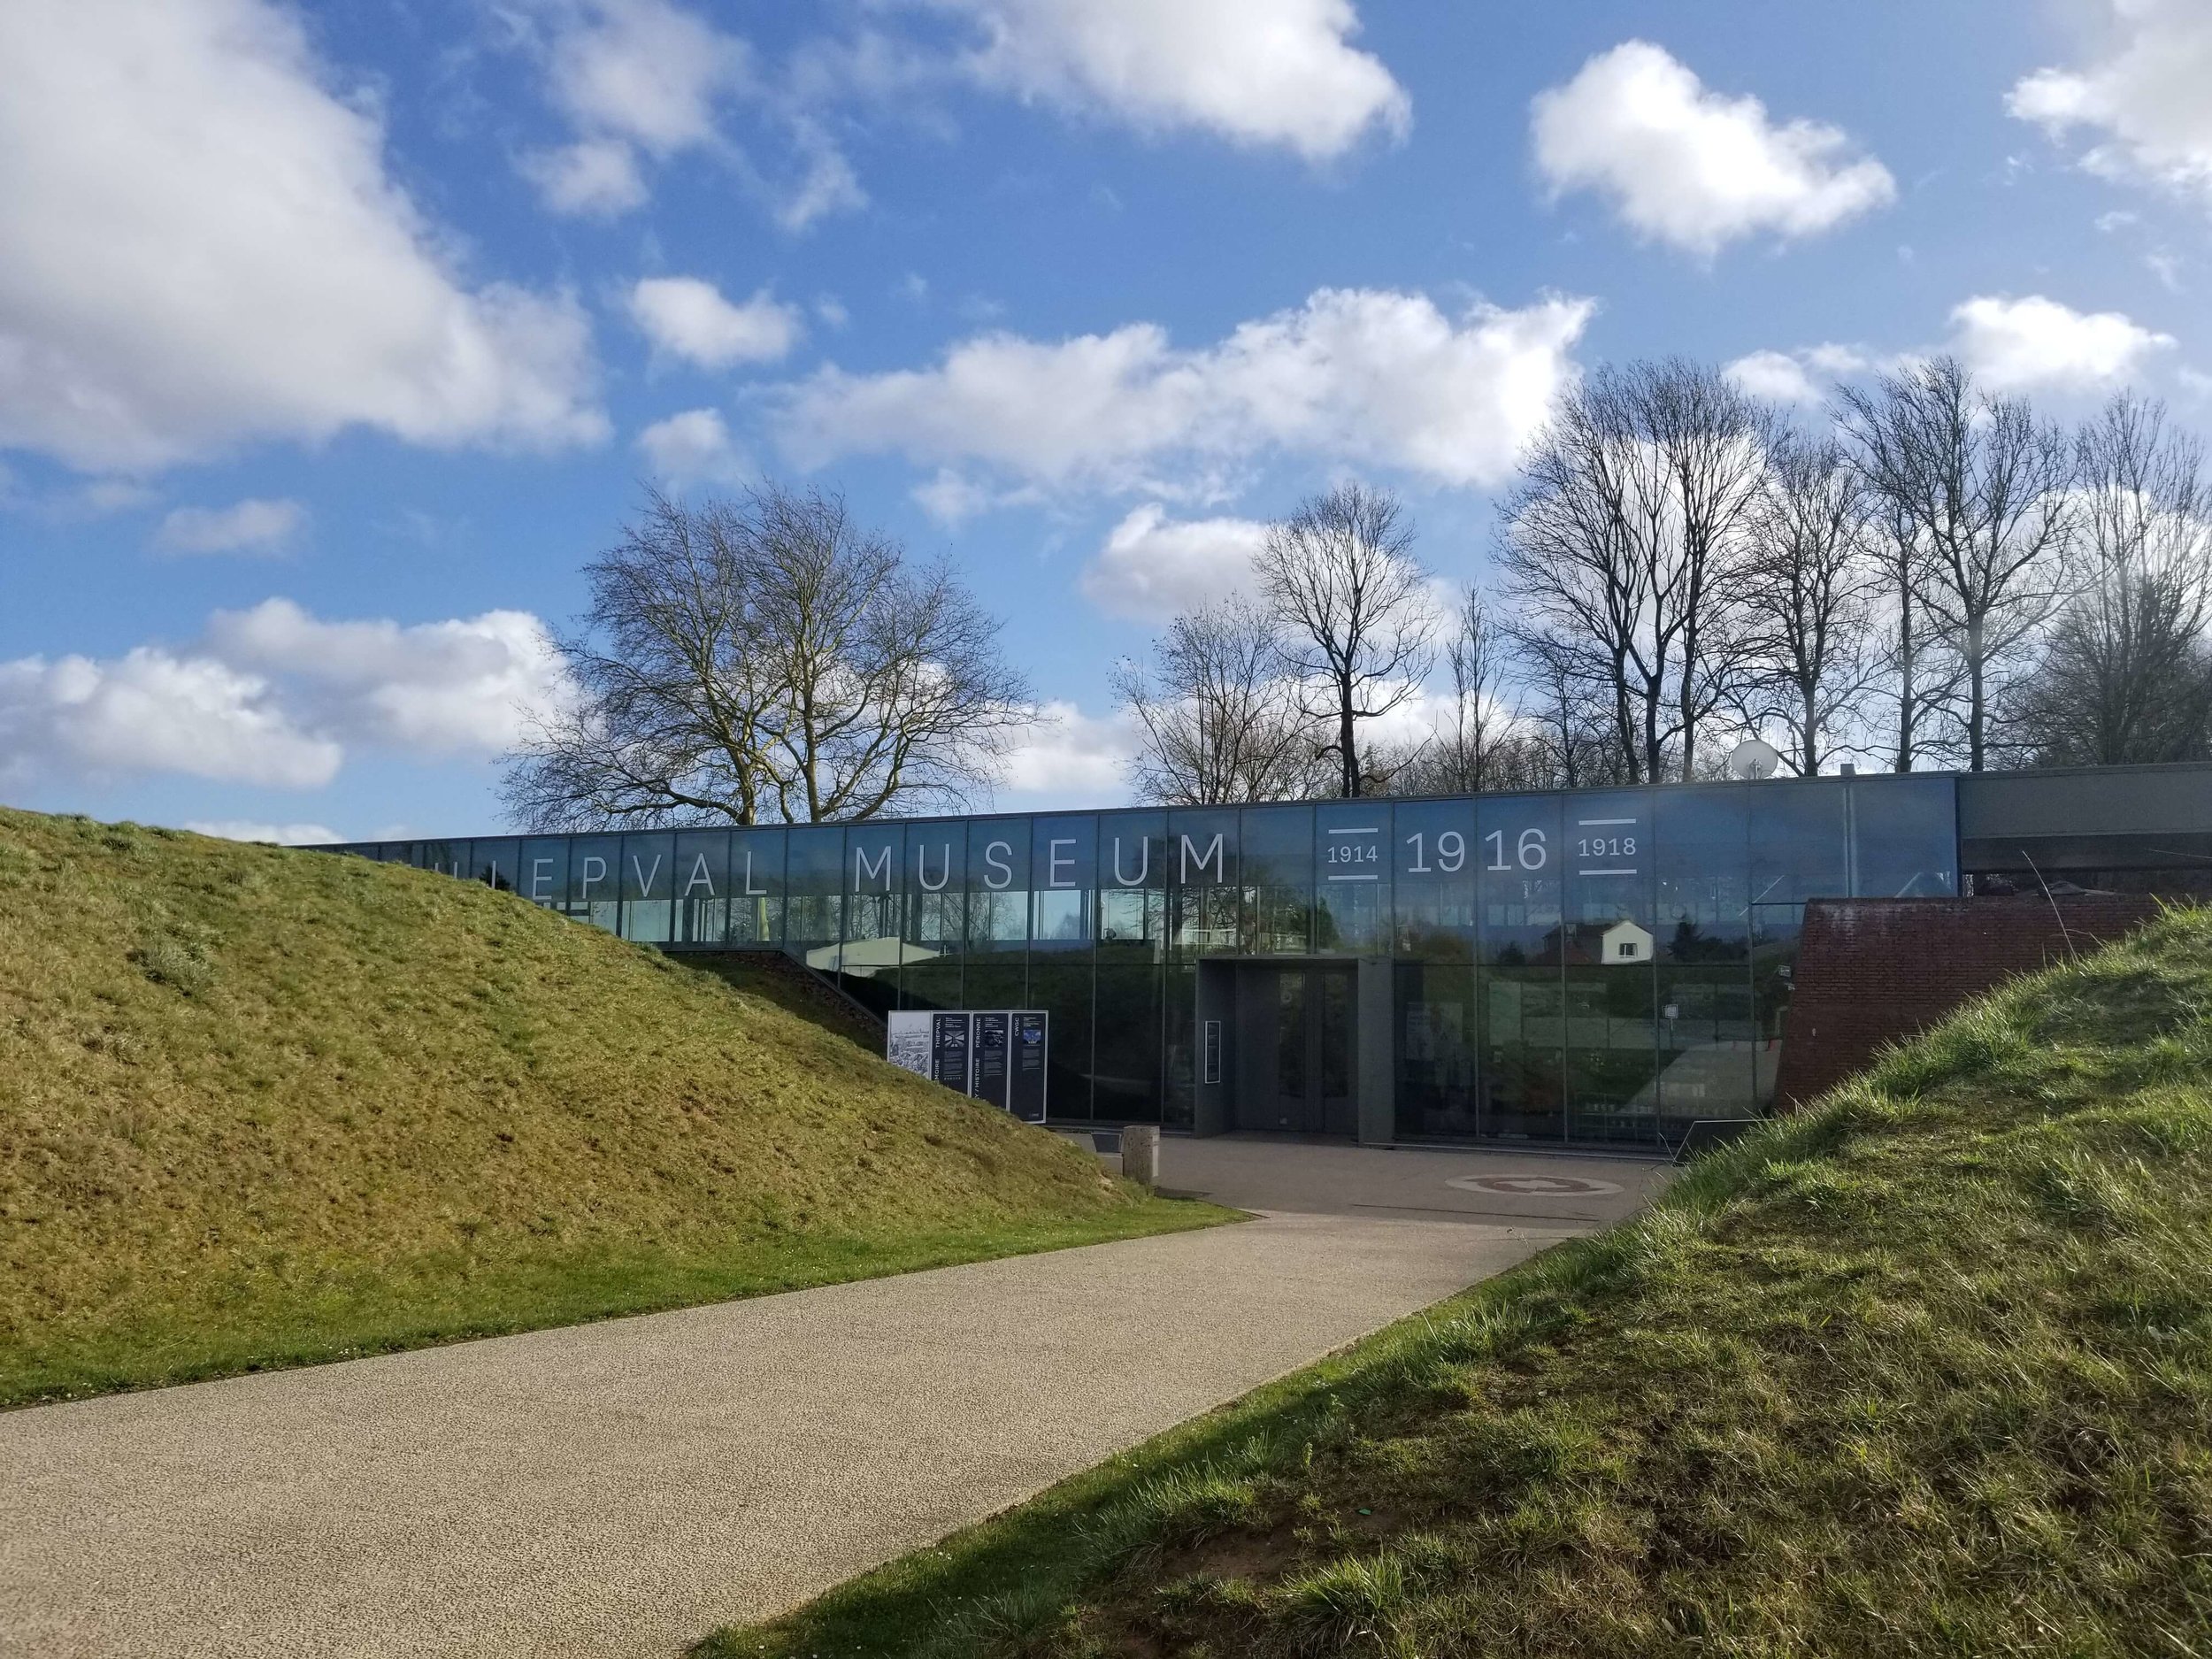  Museum at Thiepval Memorial  